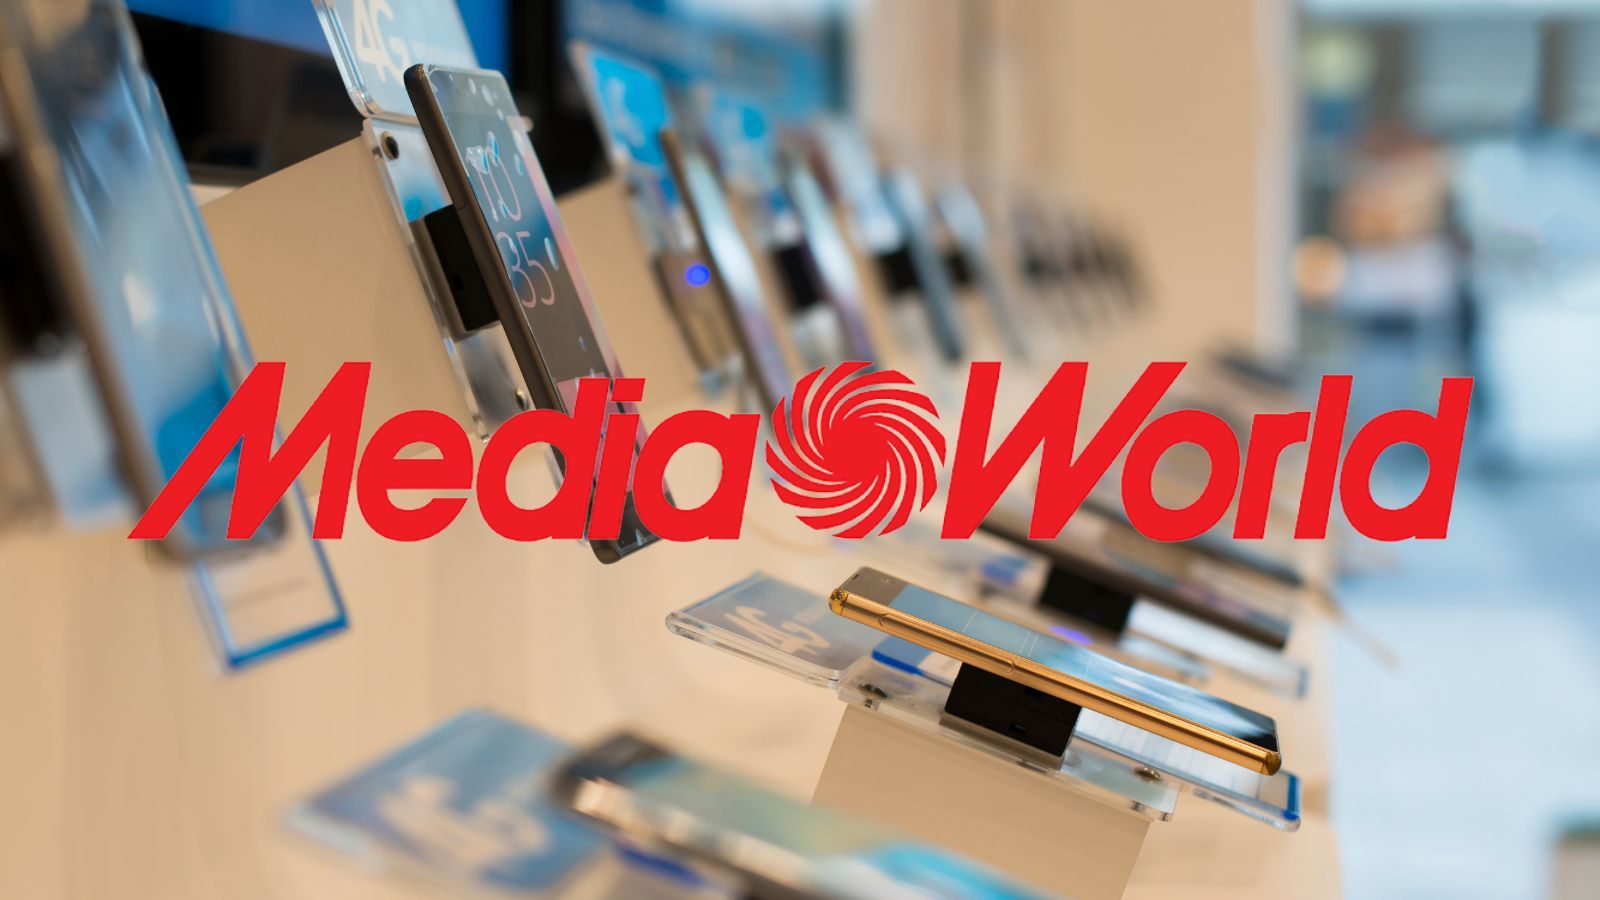 MediaWorld è strepitosa, regala sconti del 75% sui migliori smartphone